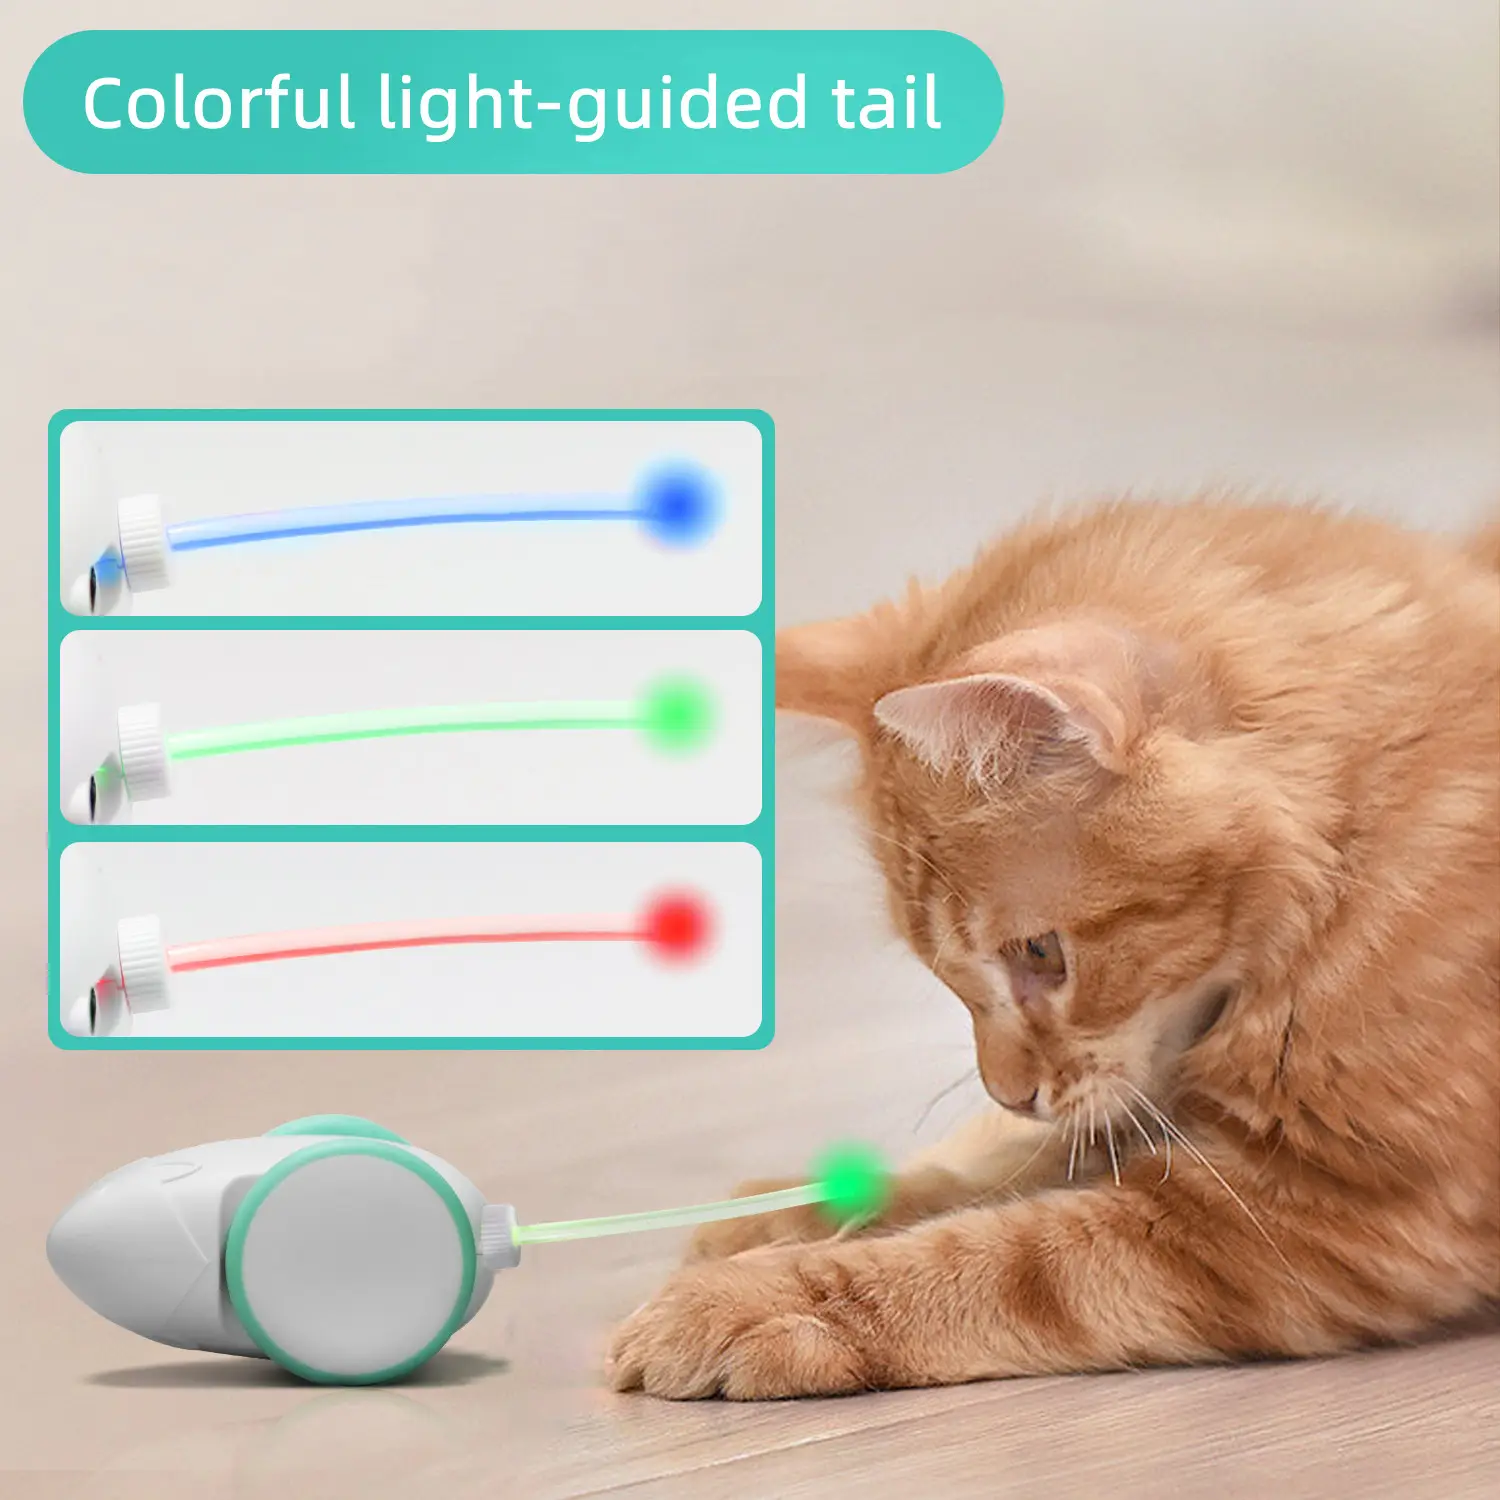 Tat kedi sıçan oyuncak Emulational renkli kuyruk ve tüy kuyruk ile otomatik interaktif Pet kedi oyuncak fare